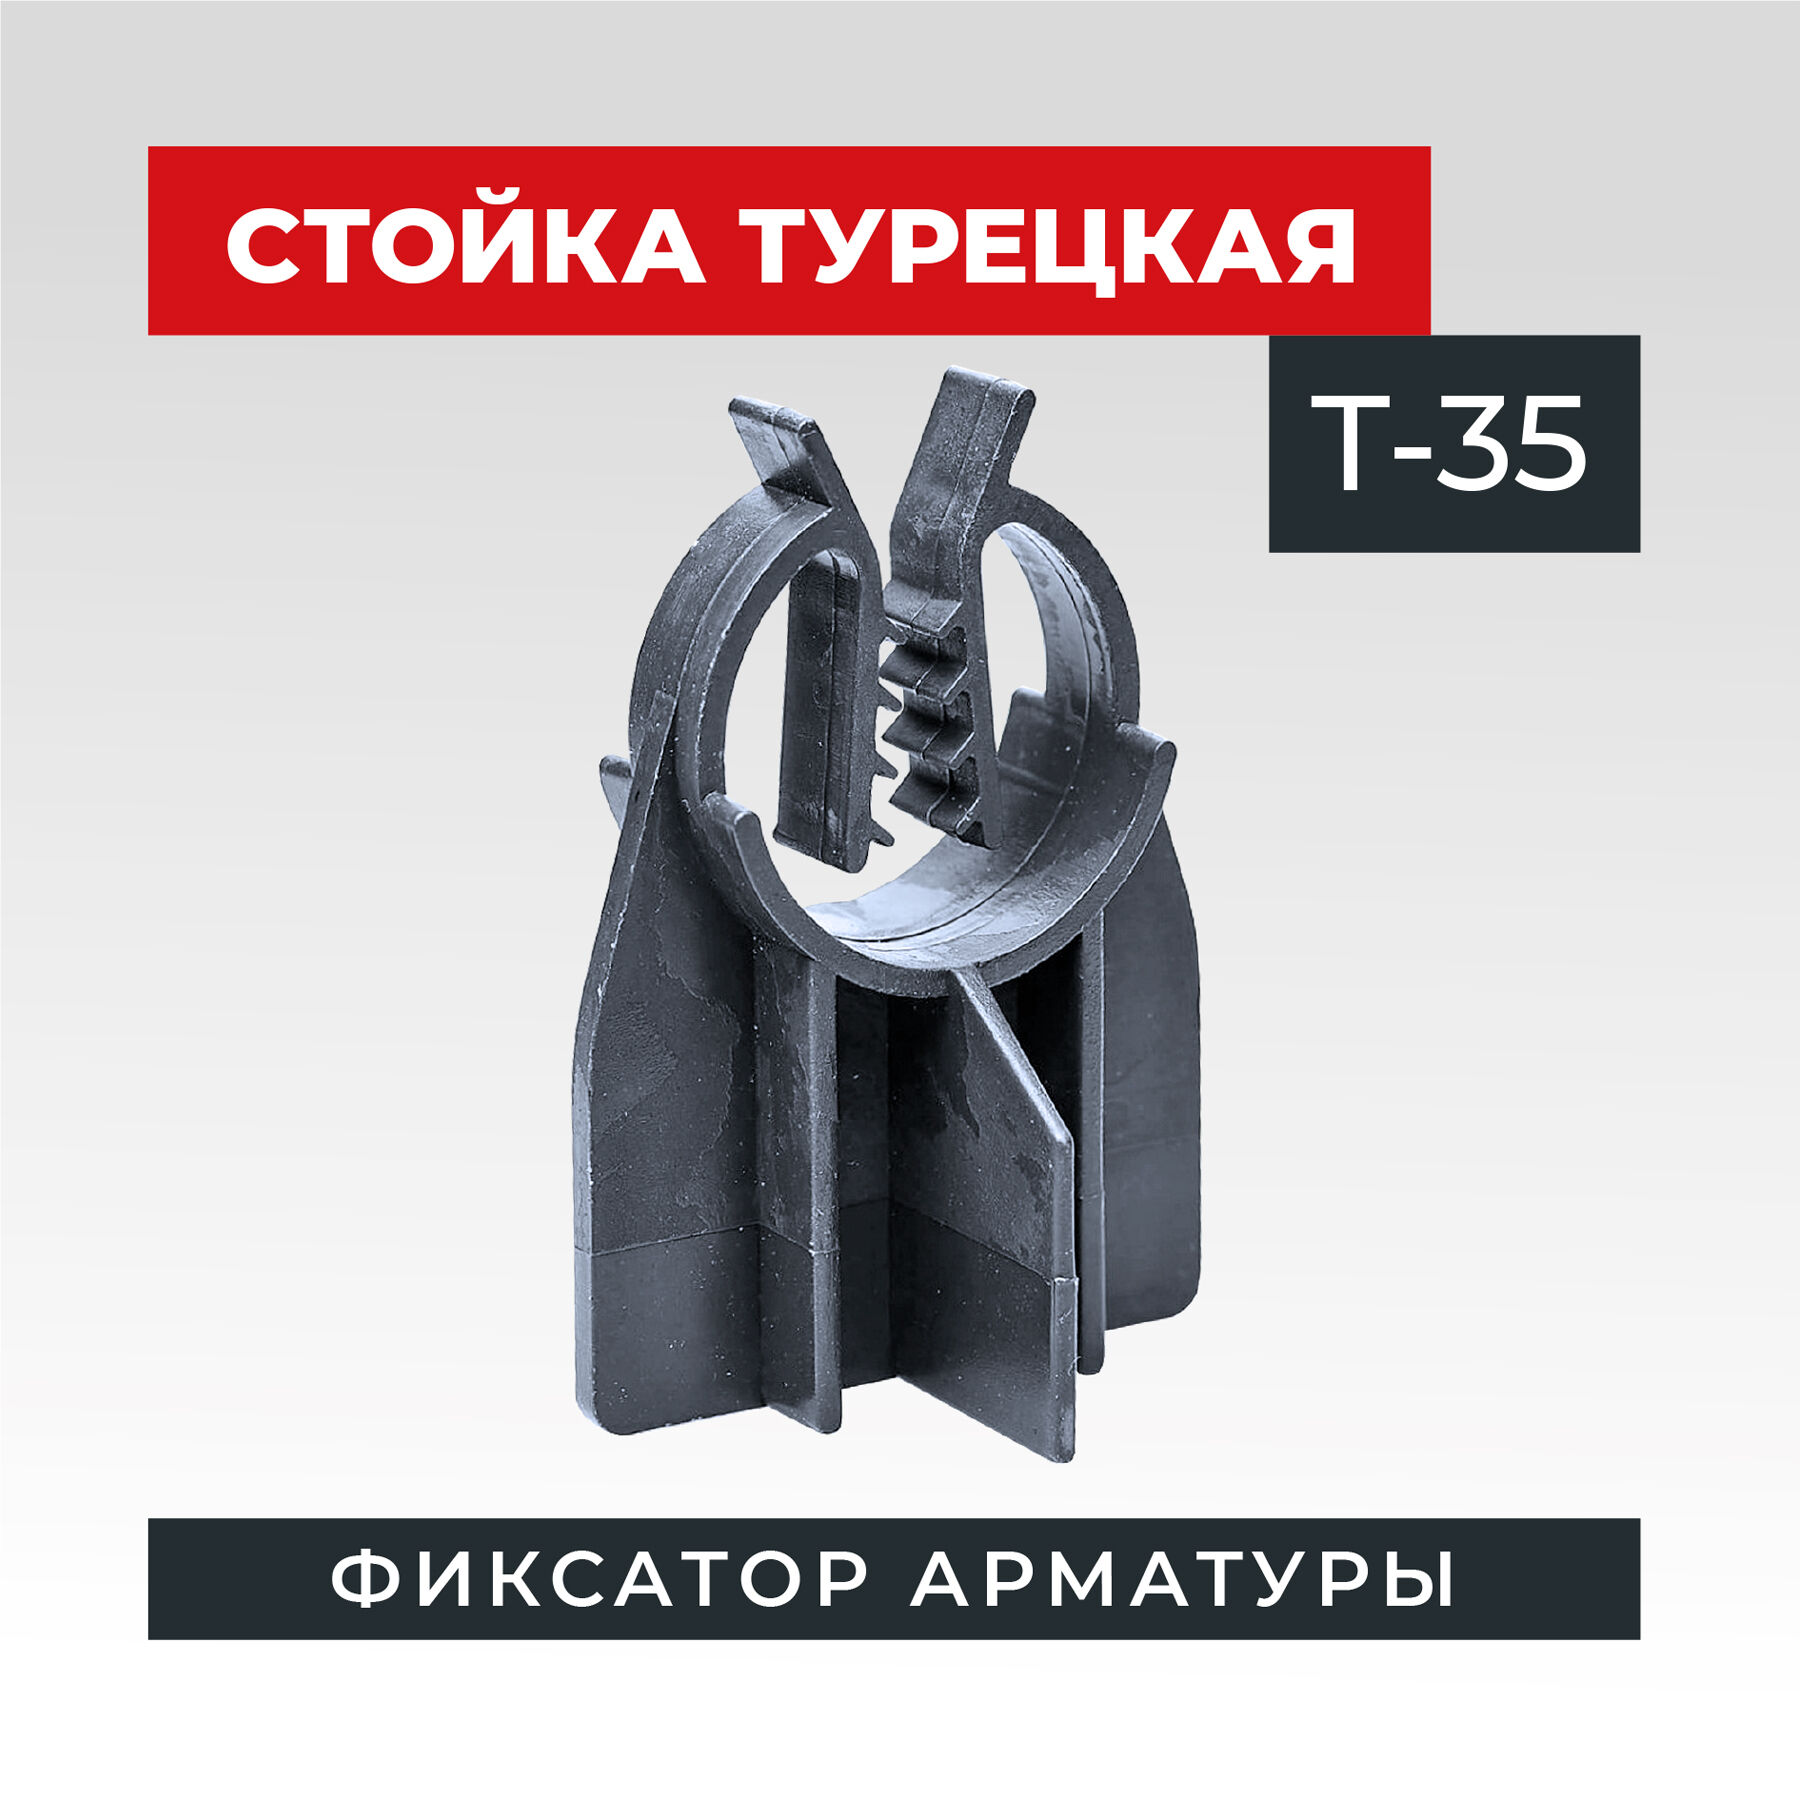 Фиксатор стойка турецкая Т-35. мешок 1000 штук